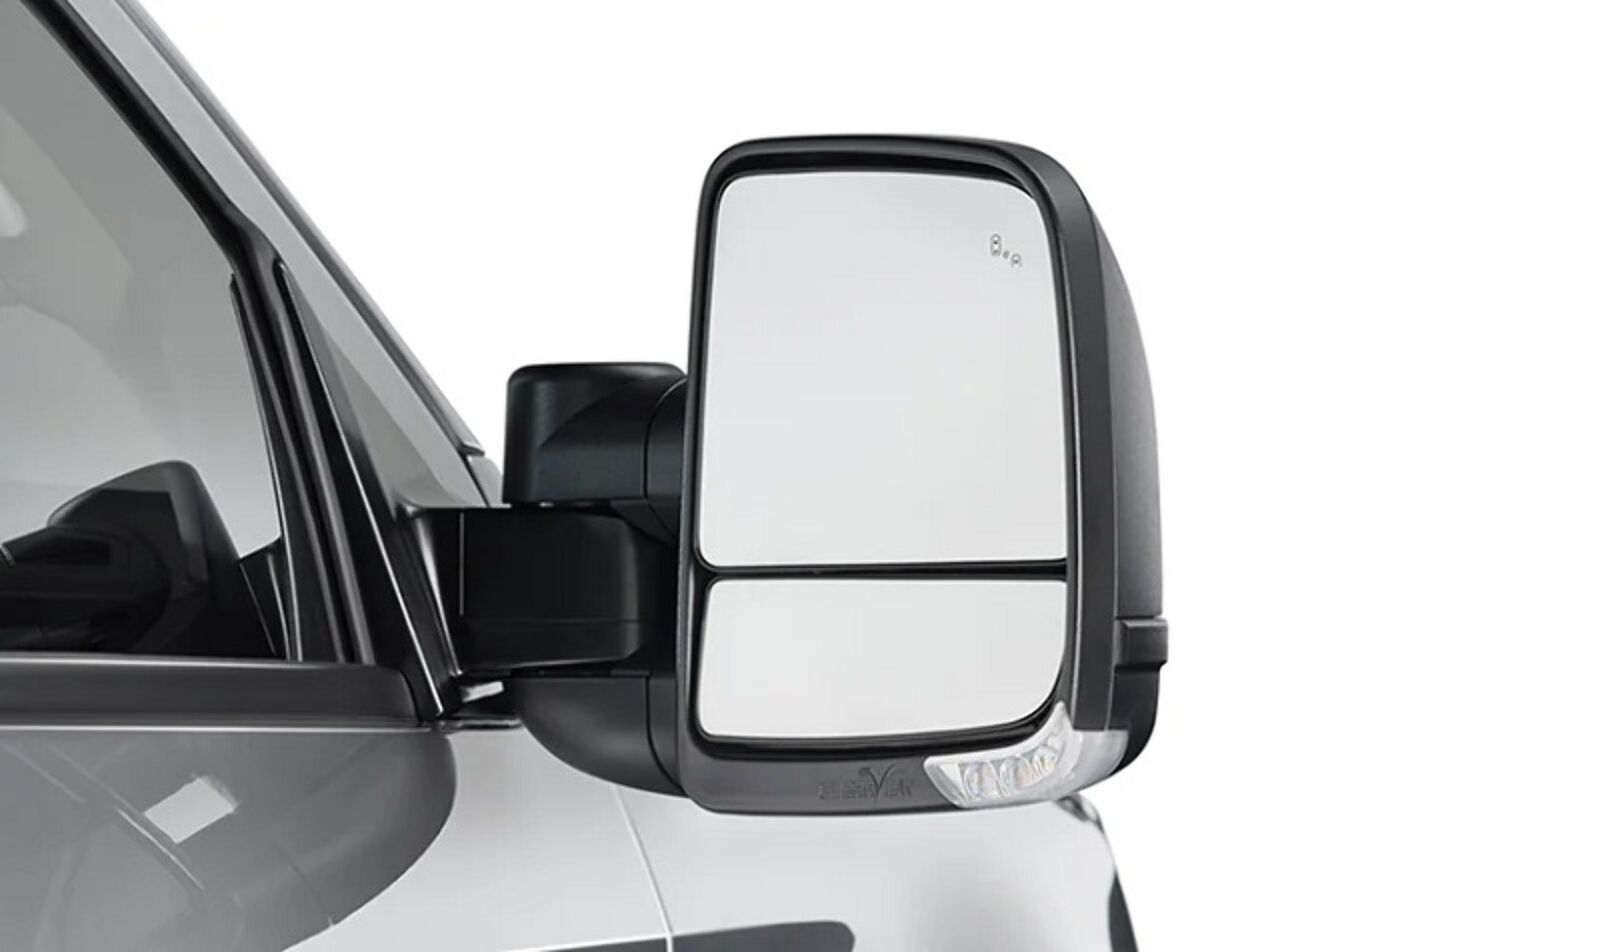 Nissan Patrol (1997-2016) Y61 GU Clearview Towing Mirrors